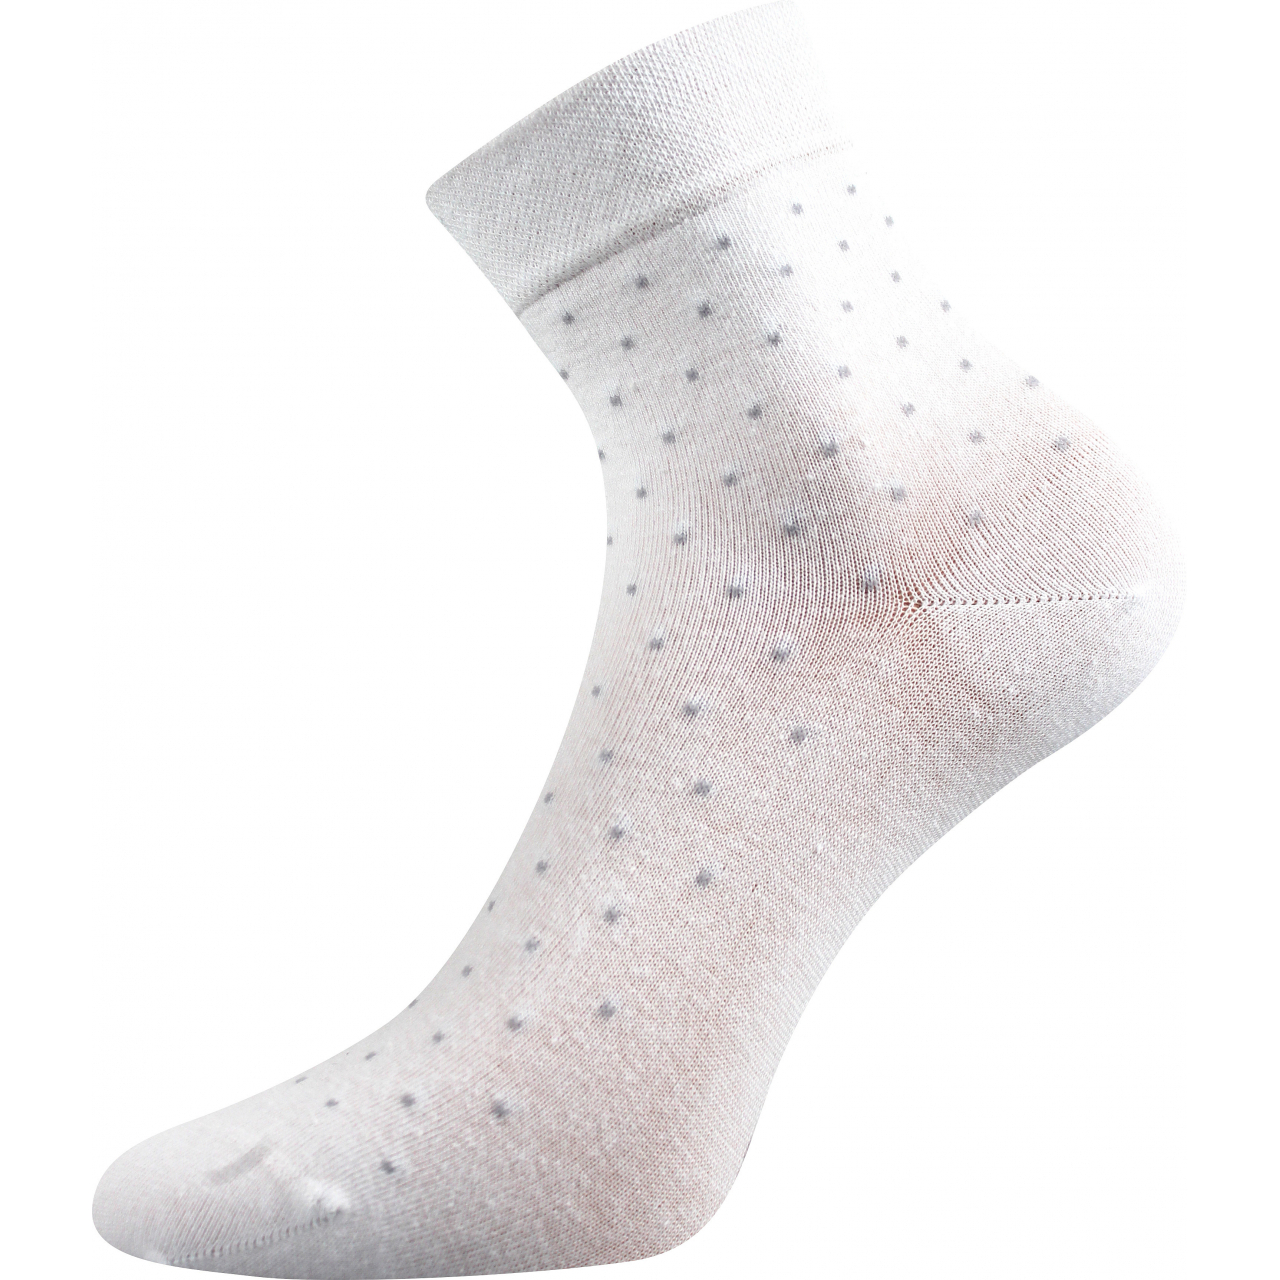 Ponožky dámské elegantní Lonka Fiona - bílé, 39-42